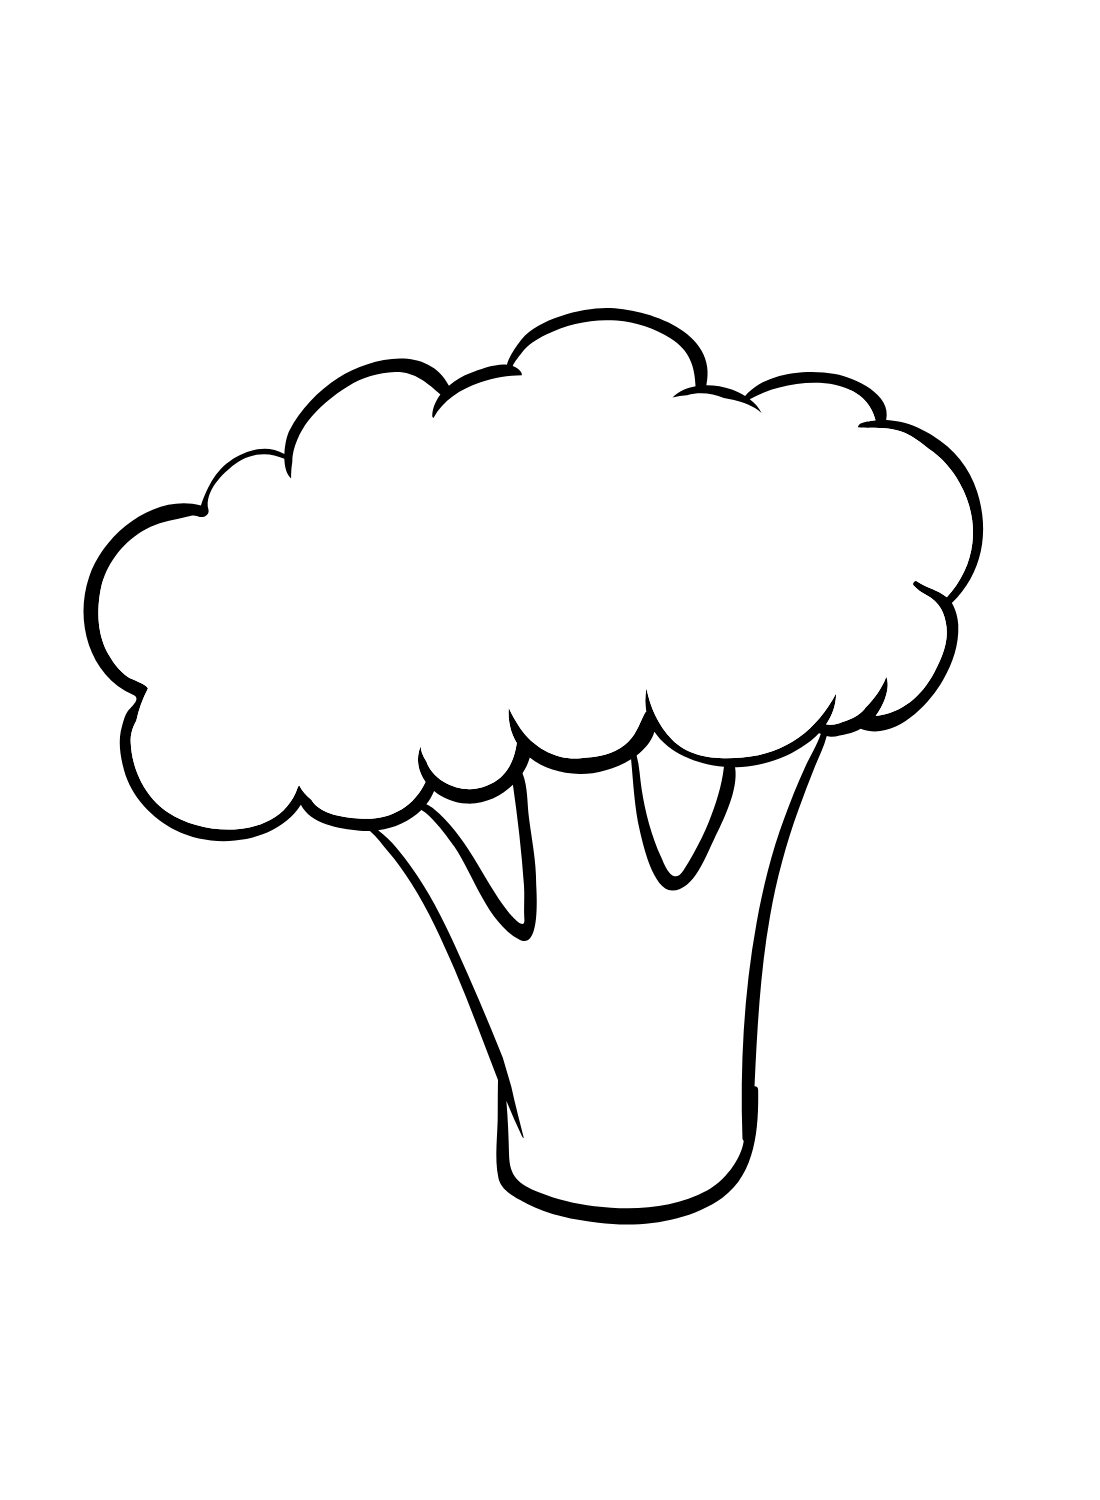 Teken eenvoudige broccoli uit broccoli